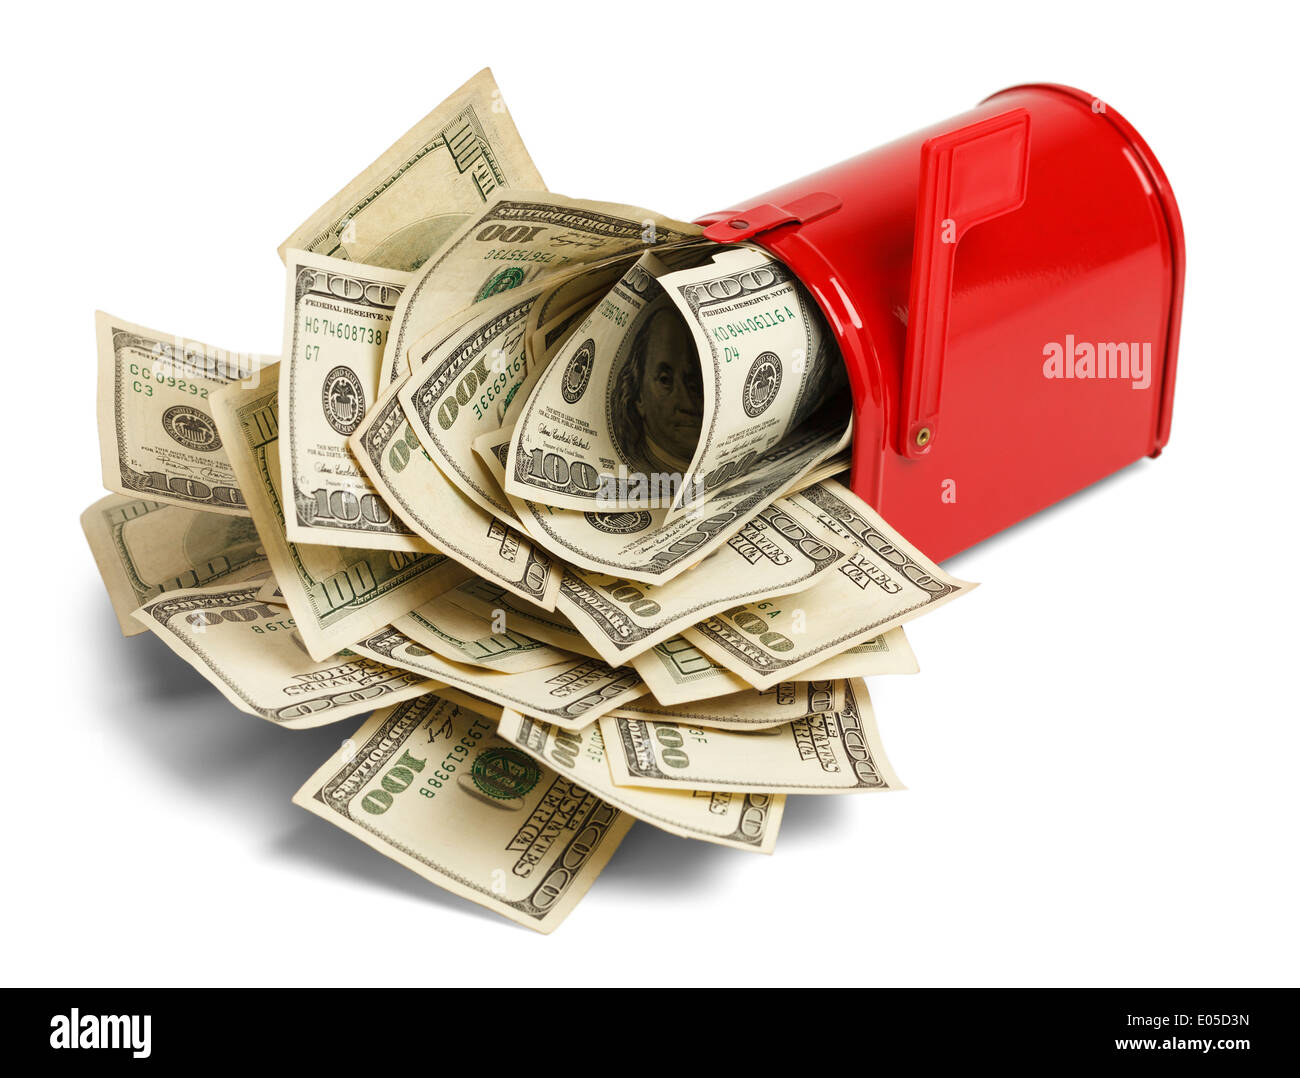 Casella rossa con ripieni di denaro all'interno isolato su sfondo bianco. Foto Stock